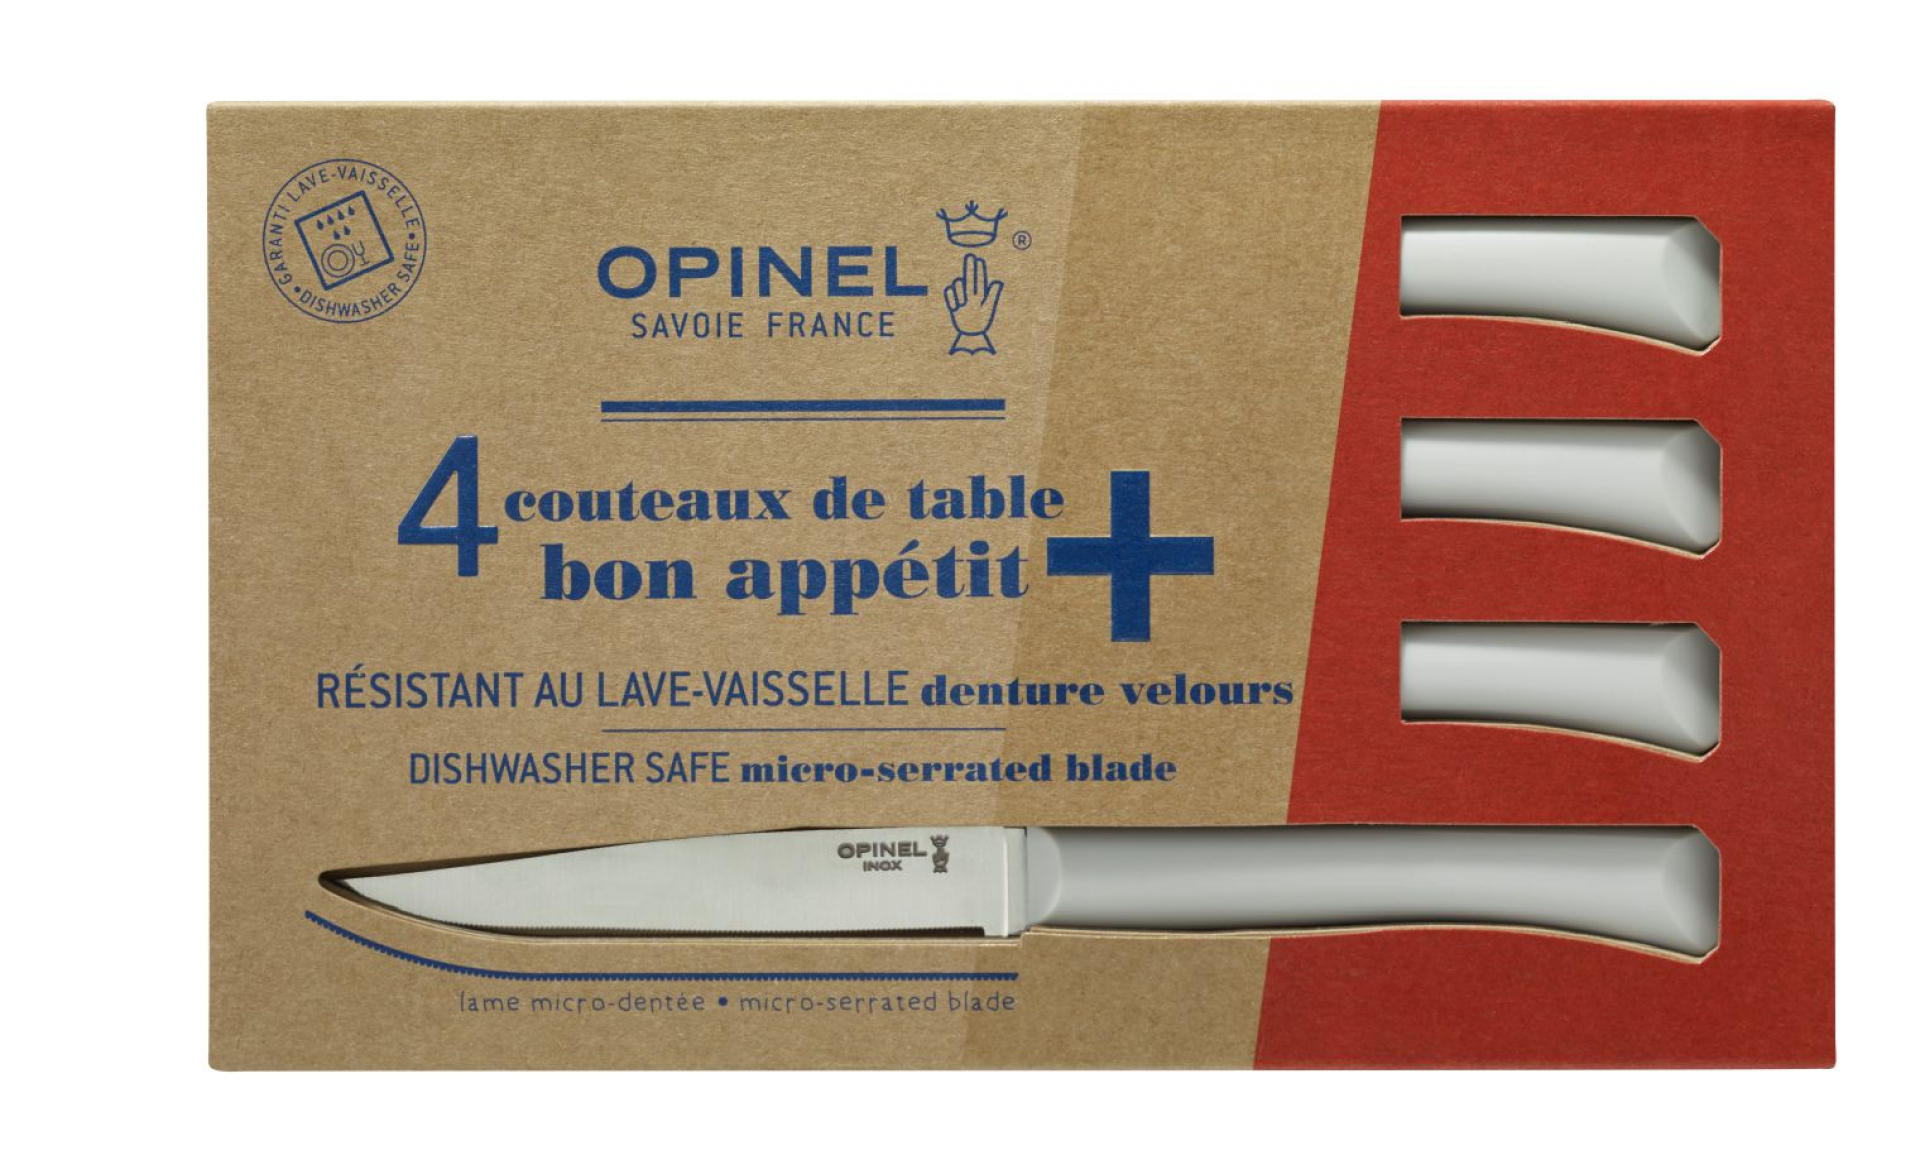 Coffret de 4 couteaux essentiels OPINEL